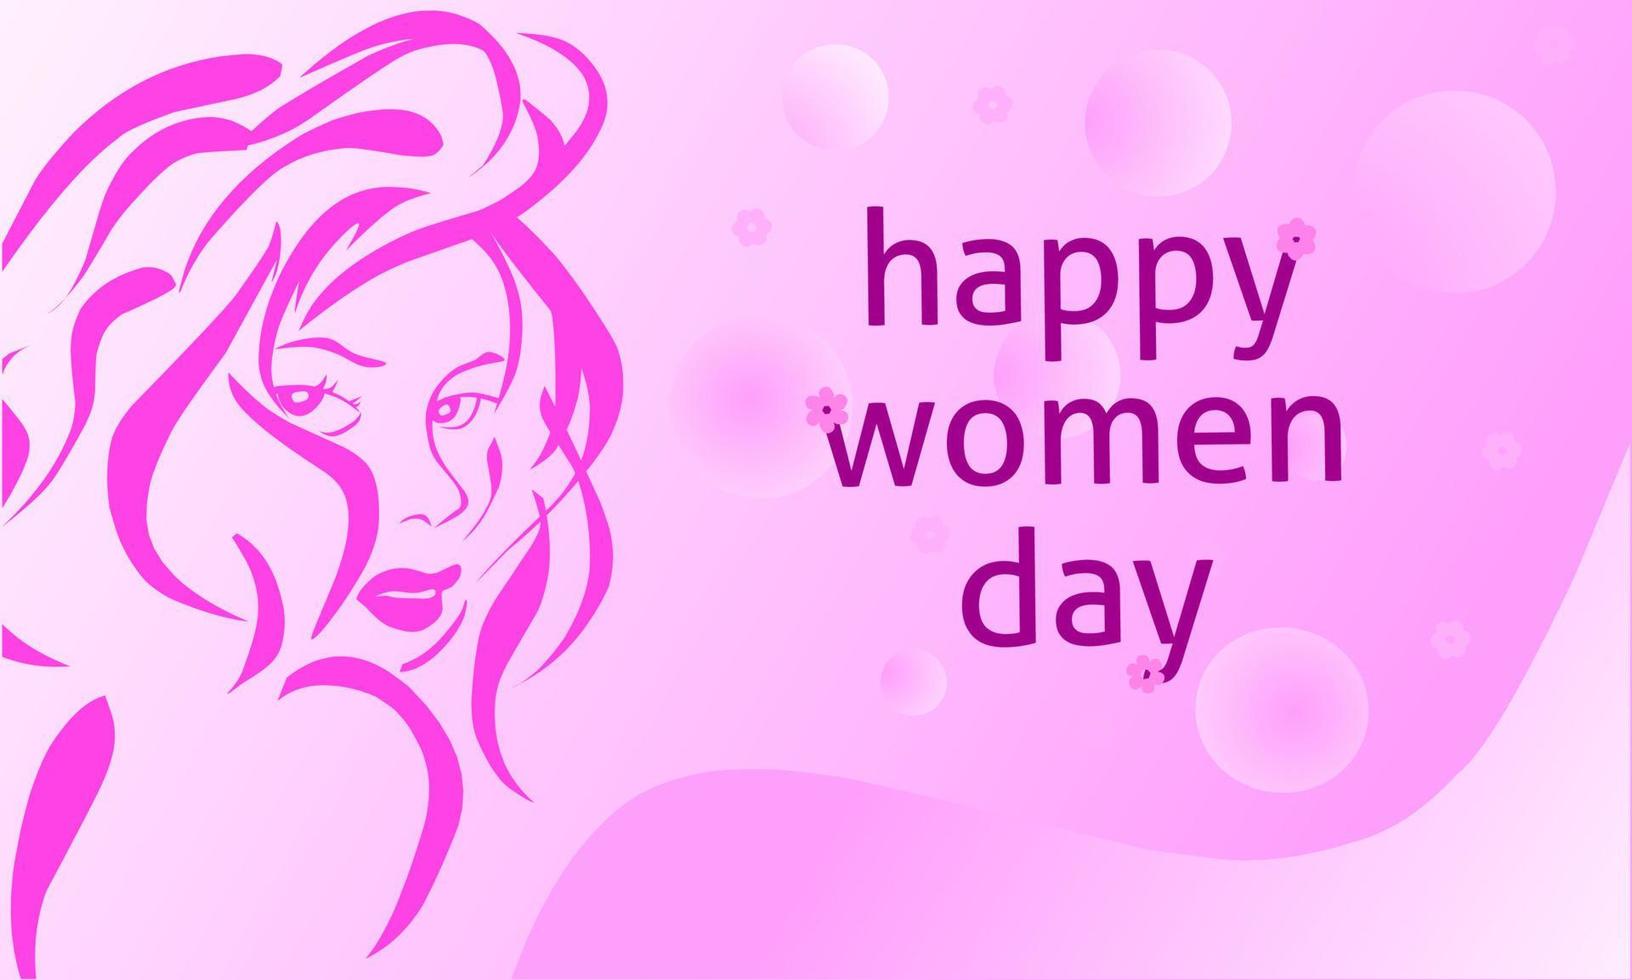 felicidades por celebrar el dia mundial de la mujer vector